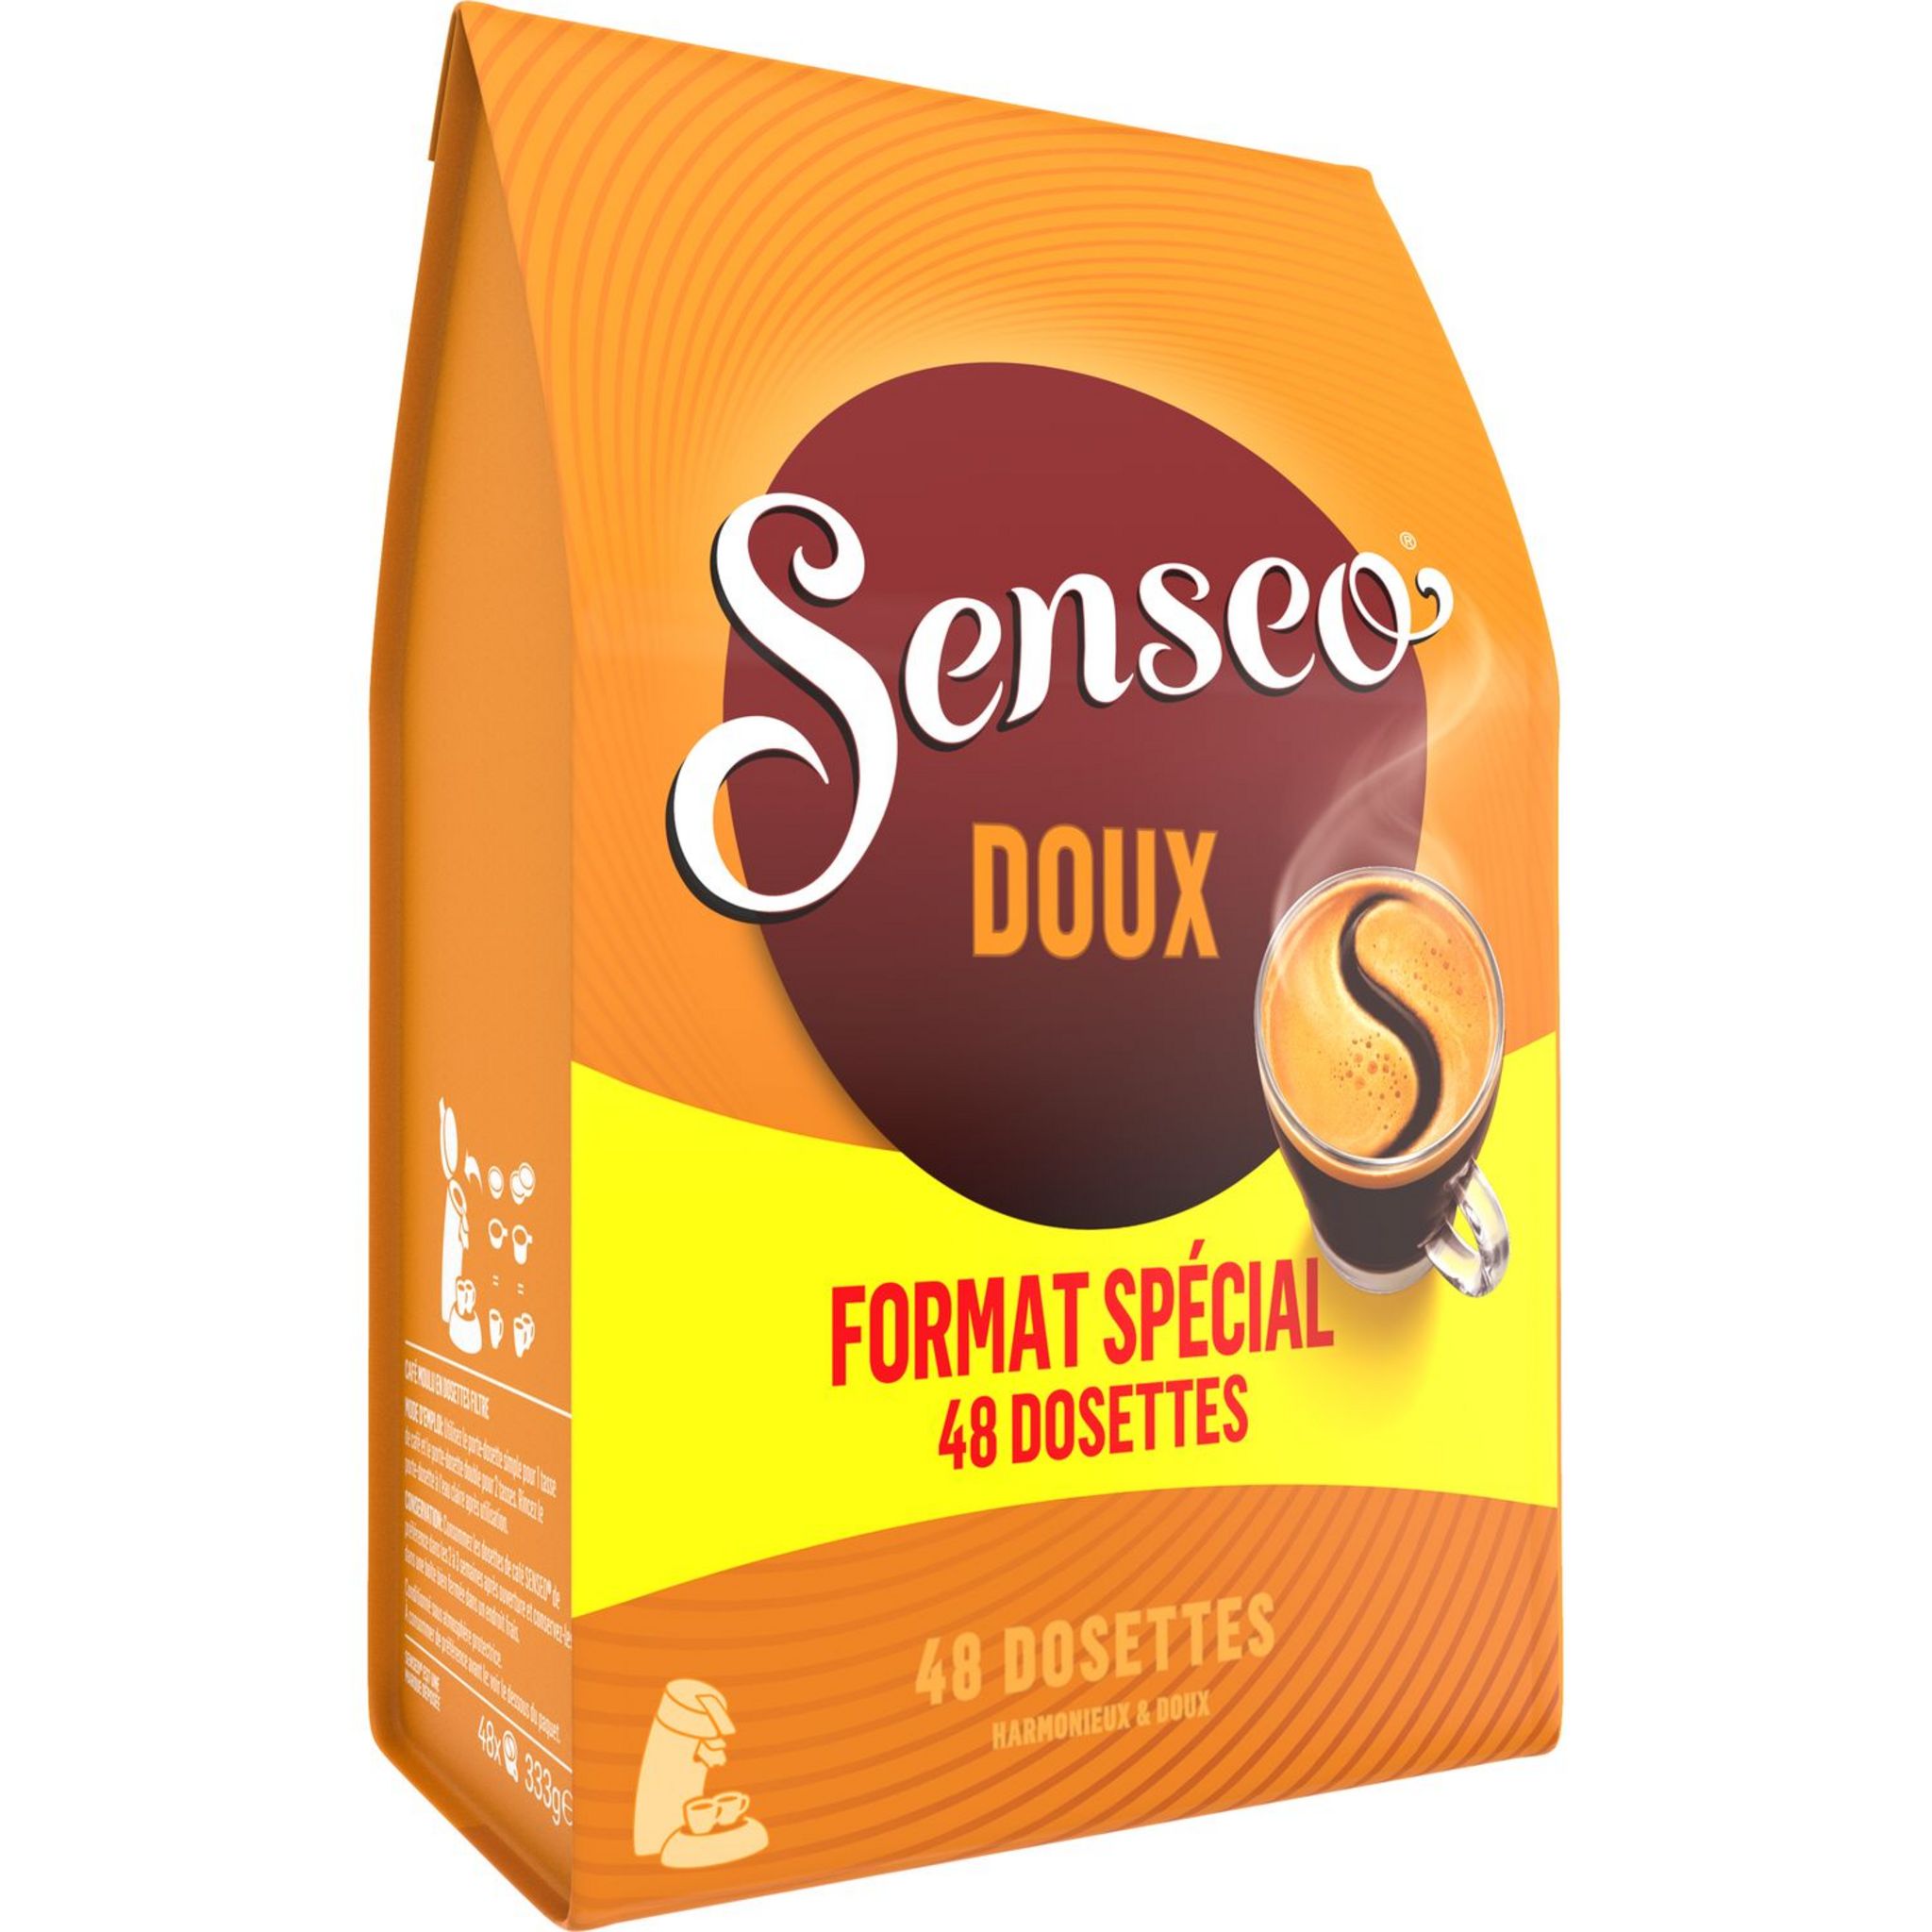 SENSEO Café doux en dosette 48 dosettes 333g pas cher 